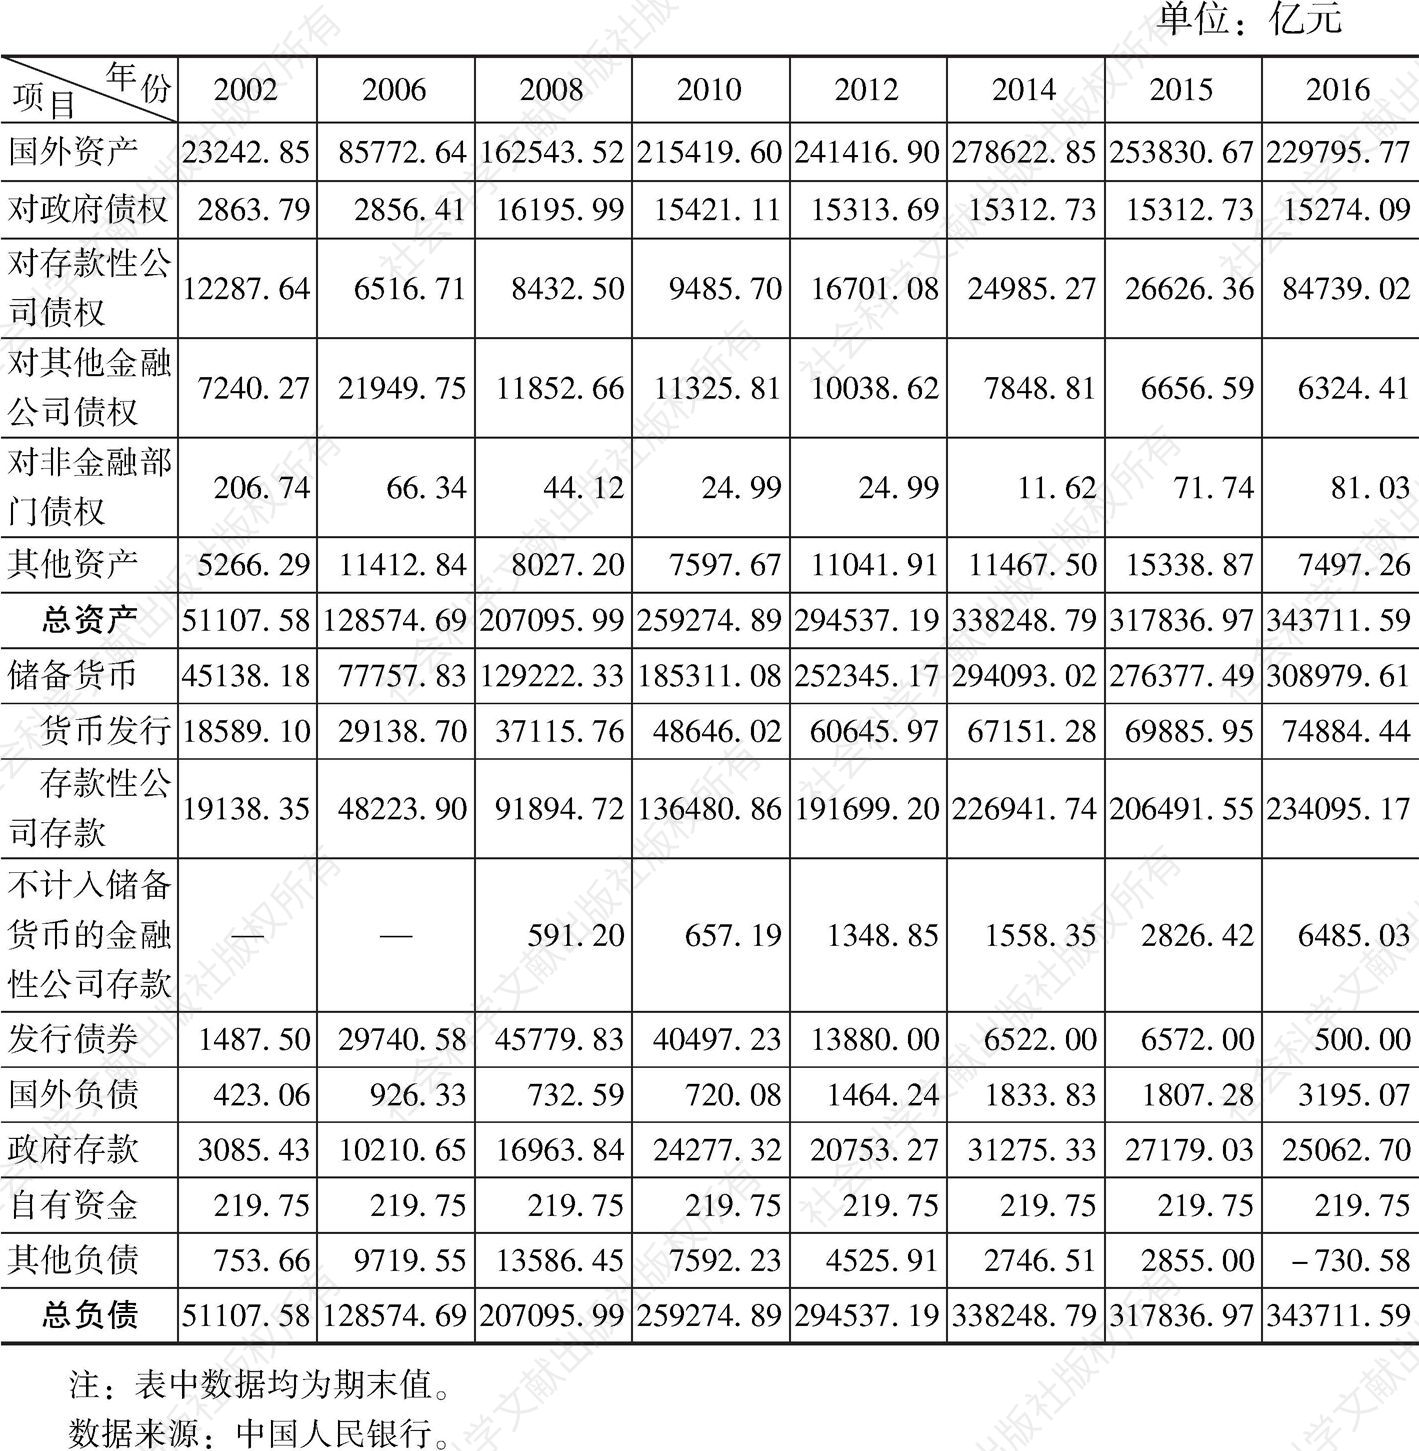 表1 中国人民银行资产负债表